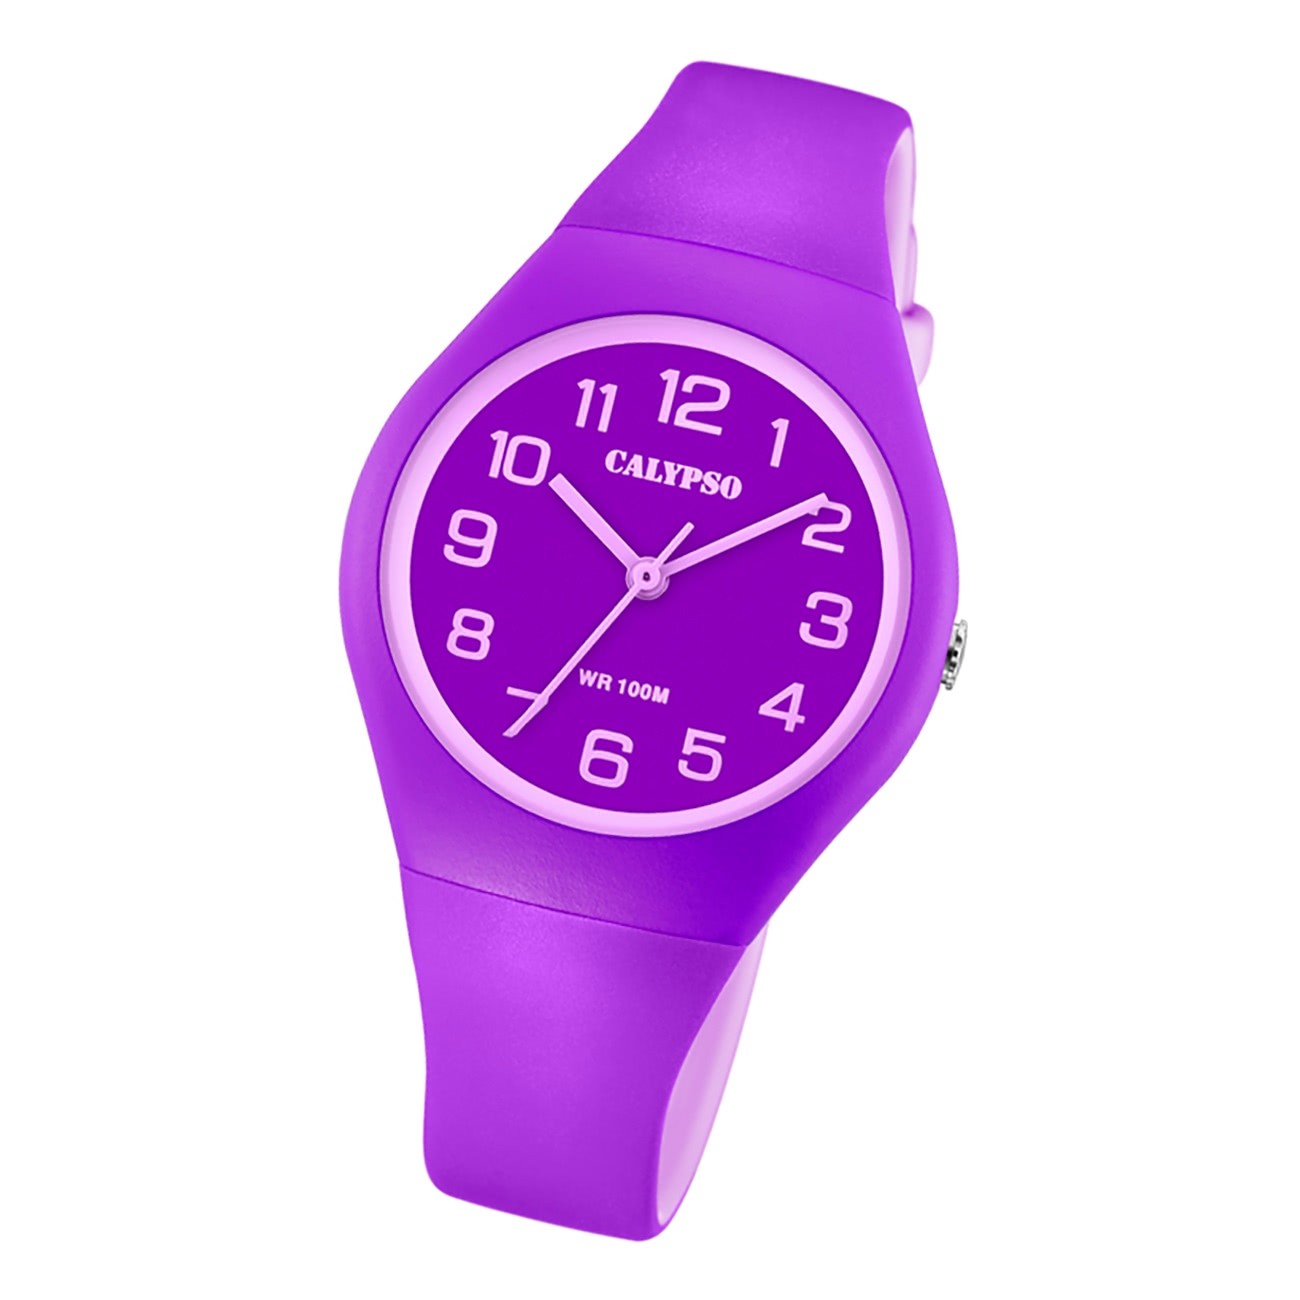 Calypso Damen Jugend Armbanduhr Fashion K5777/4 Analog Kunststoff lila UK5777/4